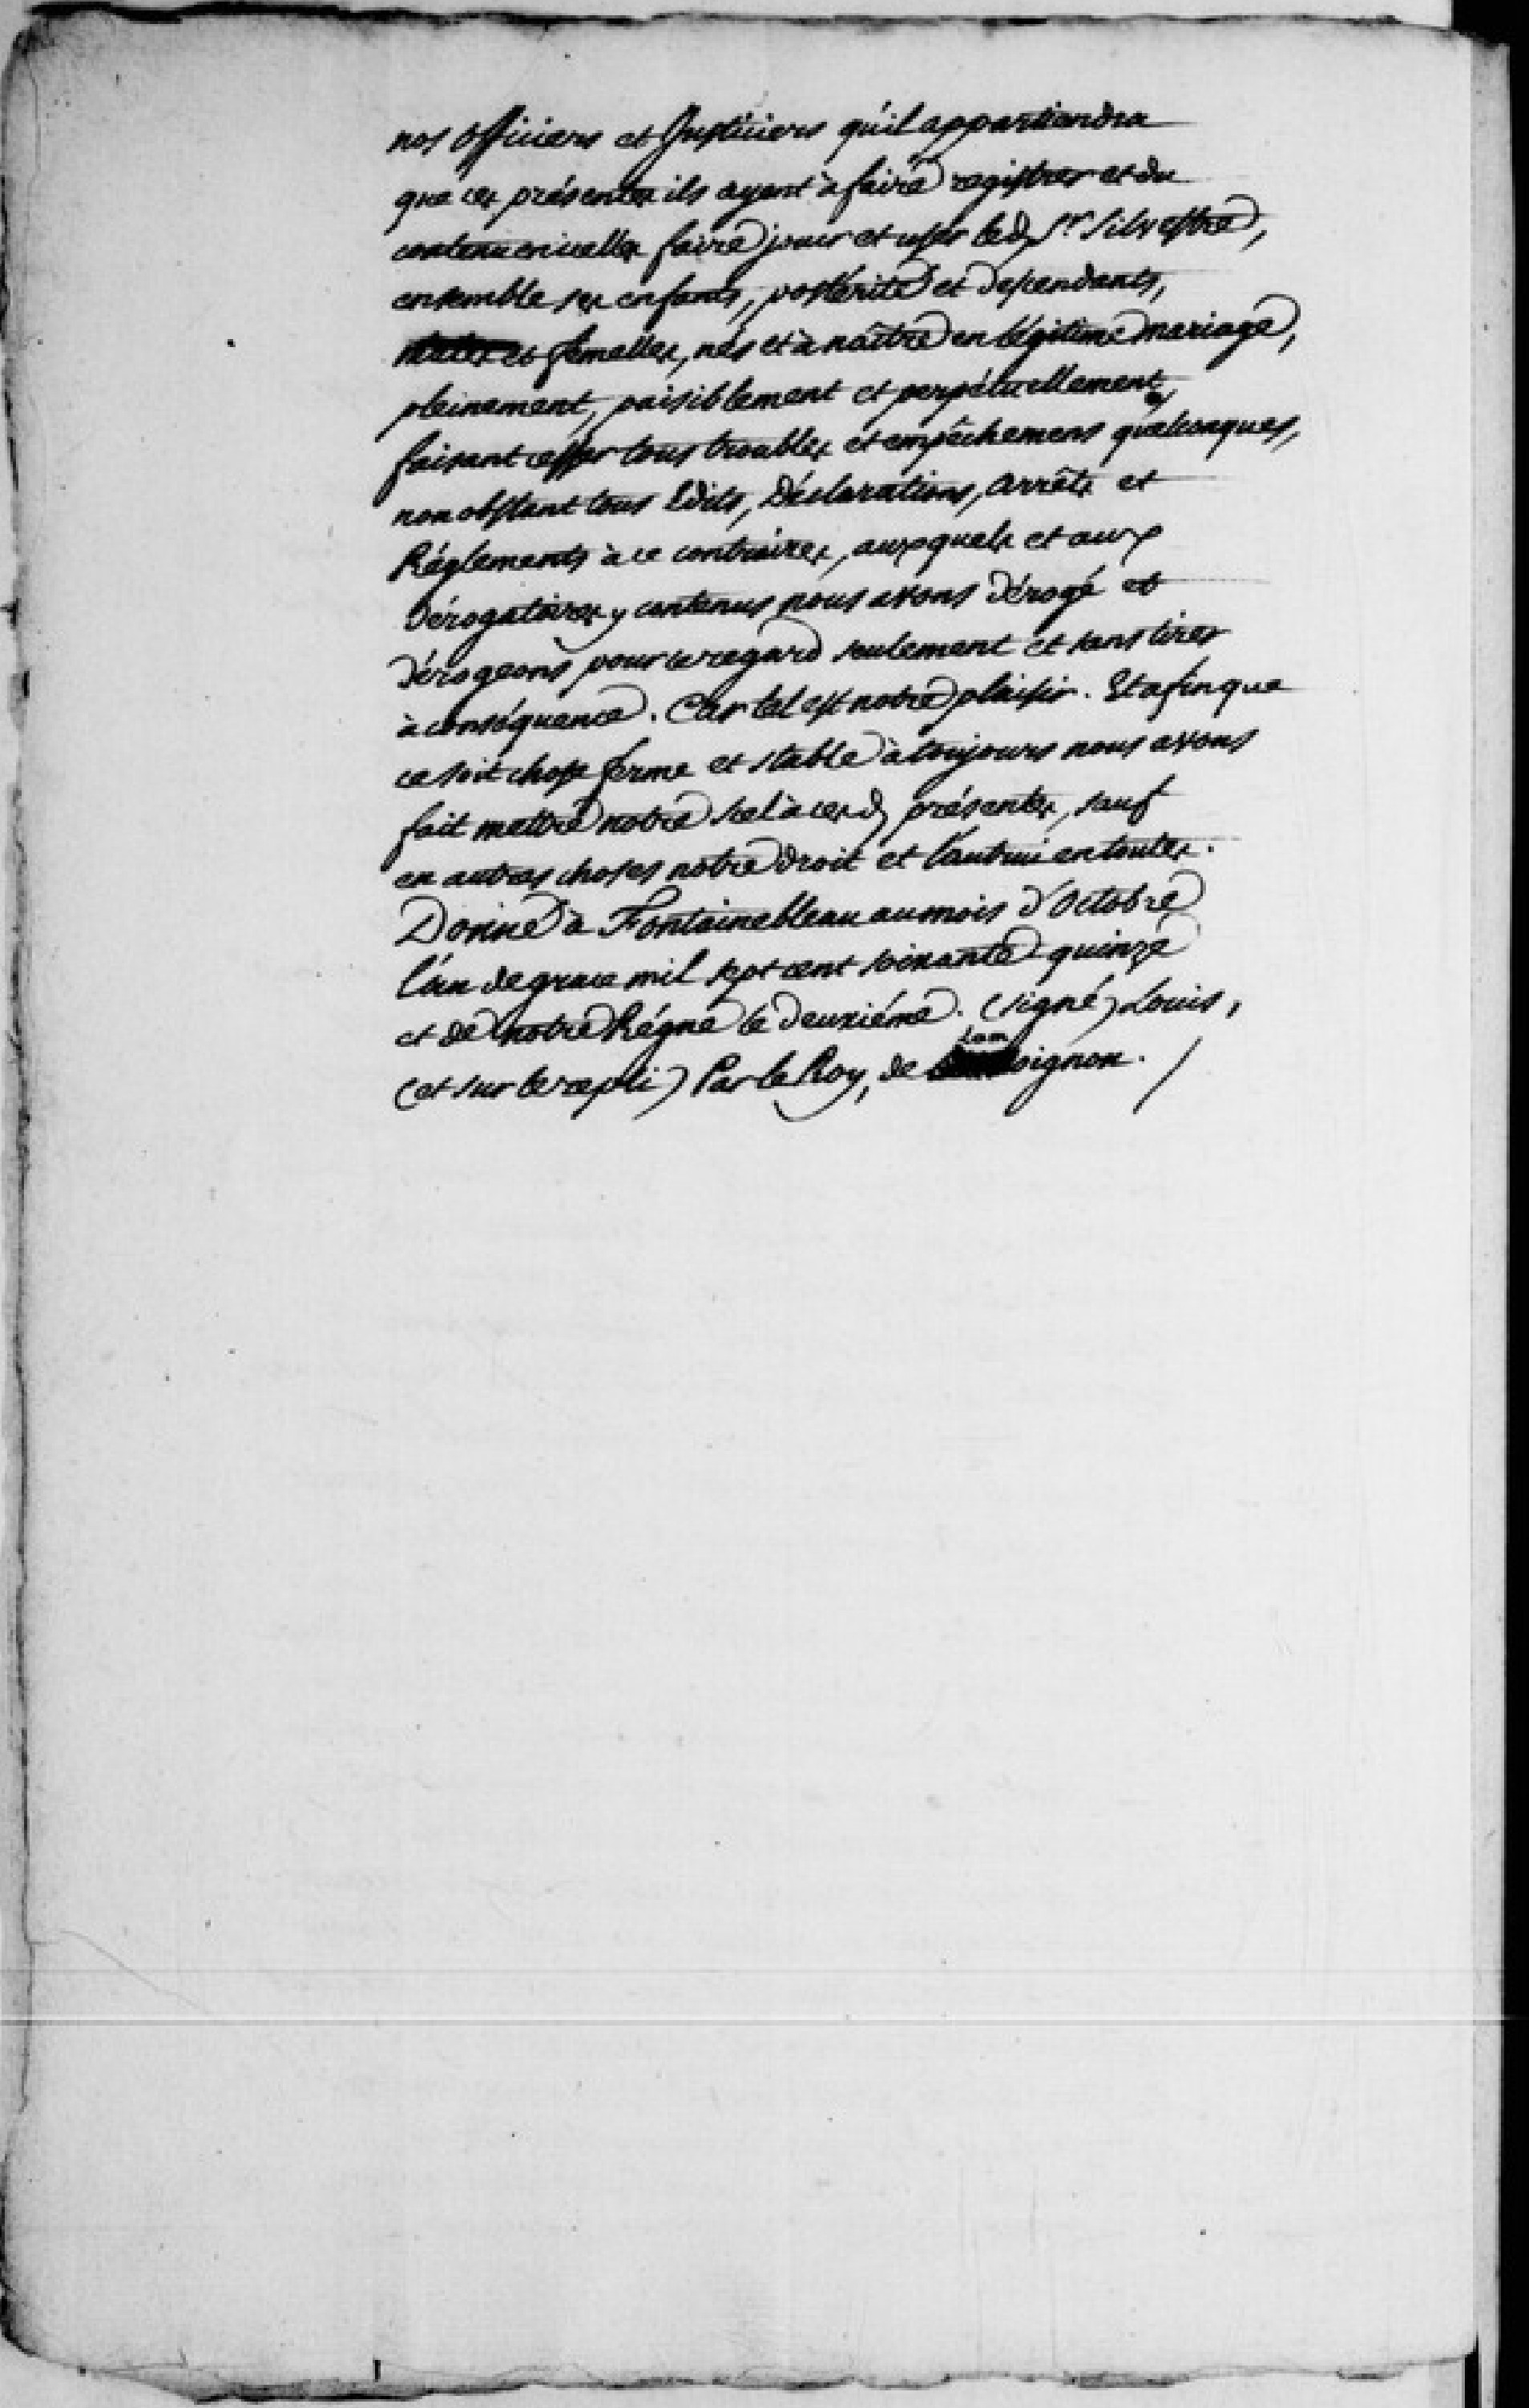  Lettres de noblesse pour Jacques Augustin de Silvestre - Page 4